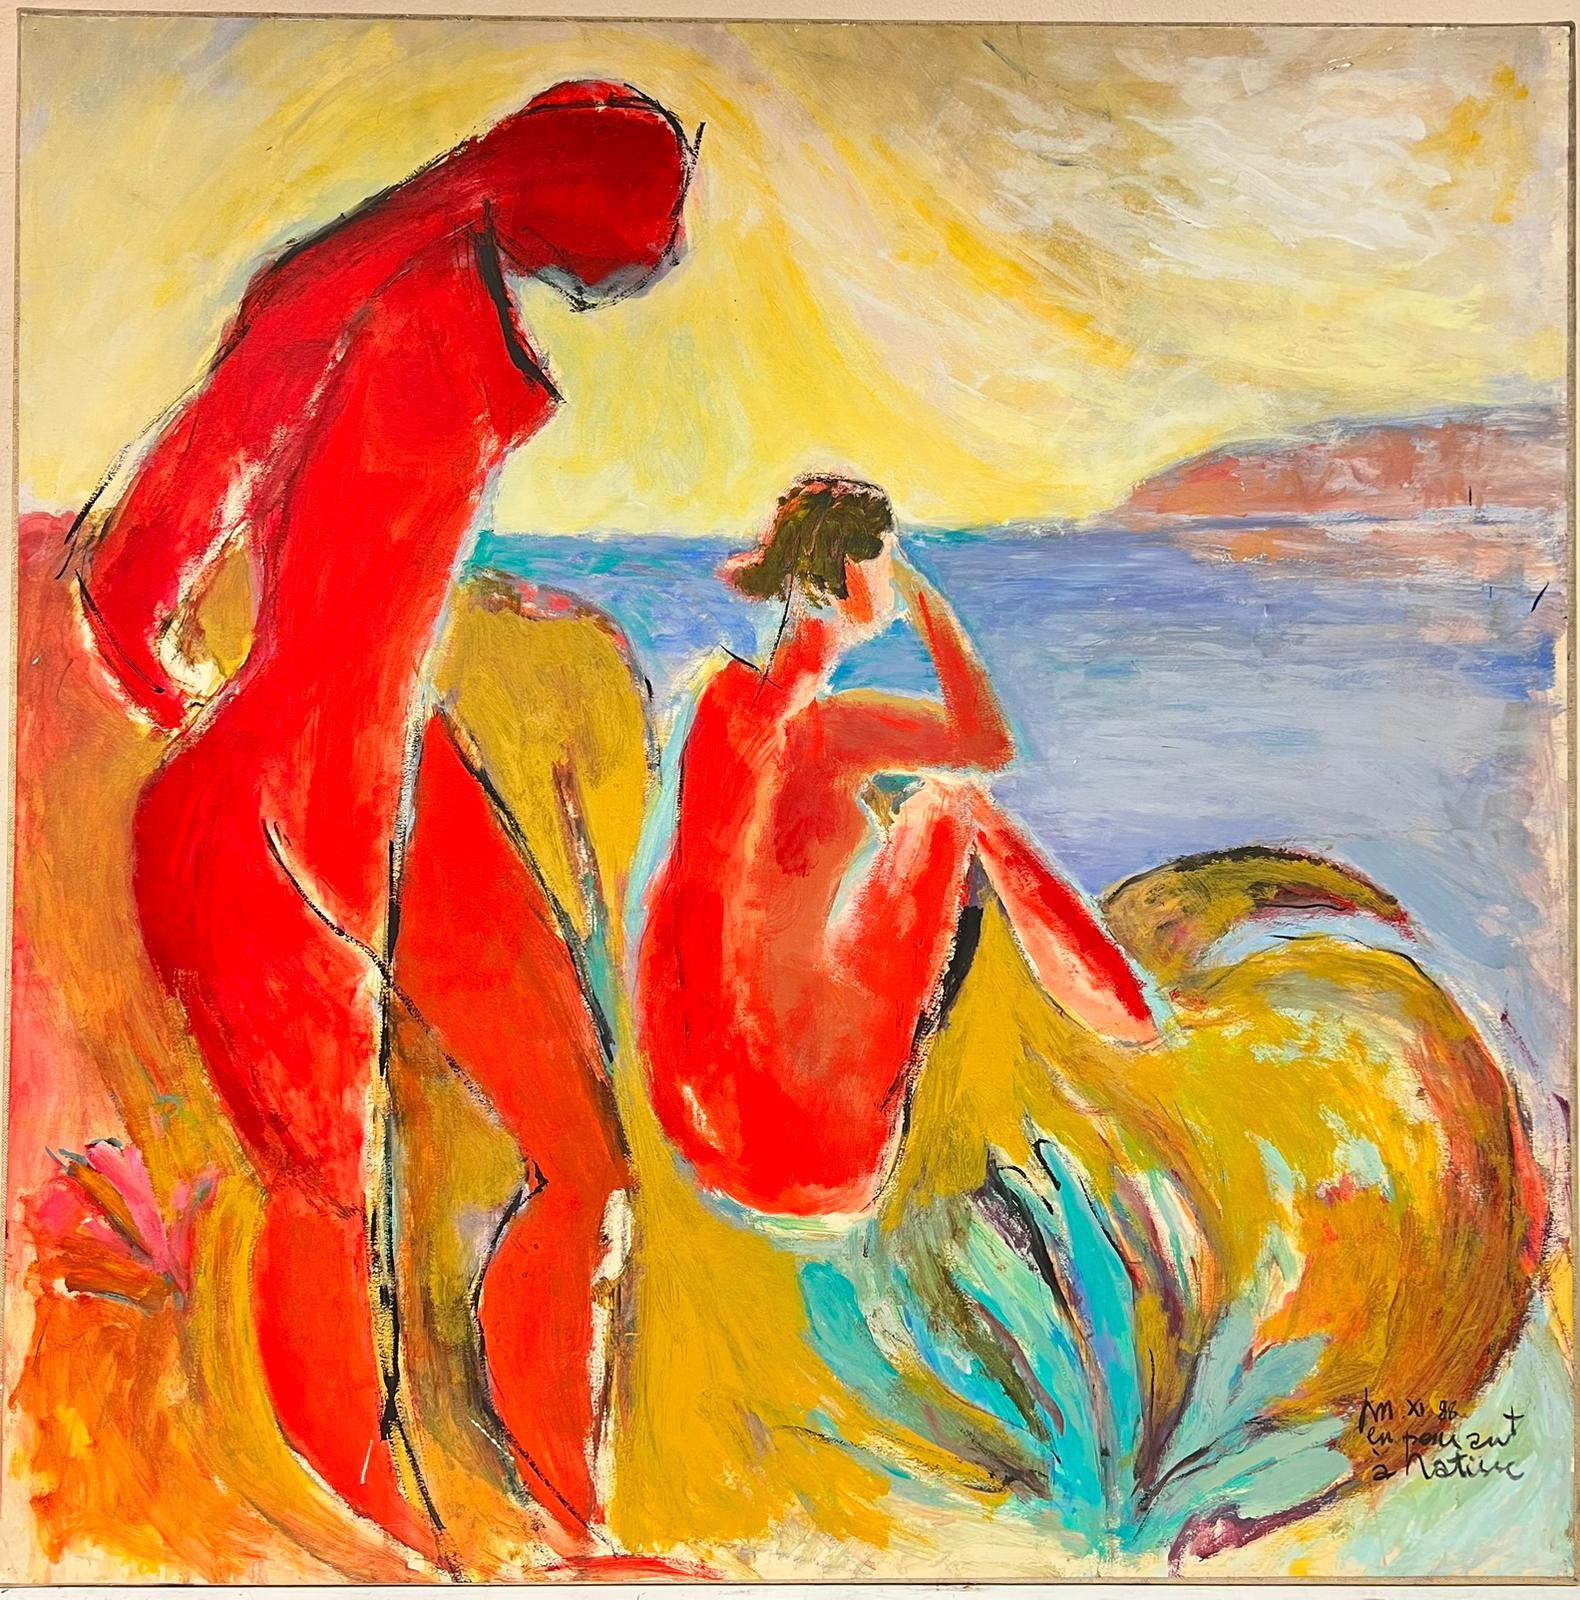 Suivre d'Henri Matisse, grande huile coloriste, femmes se baignant sur une côte - Painting de French Modernist